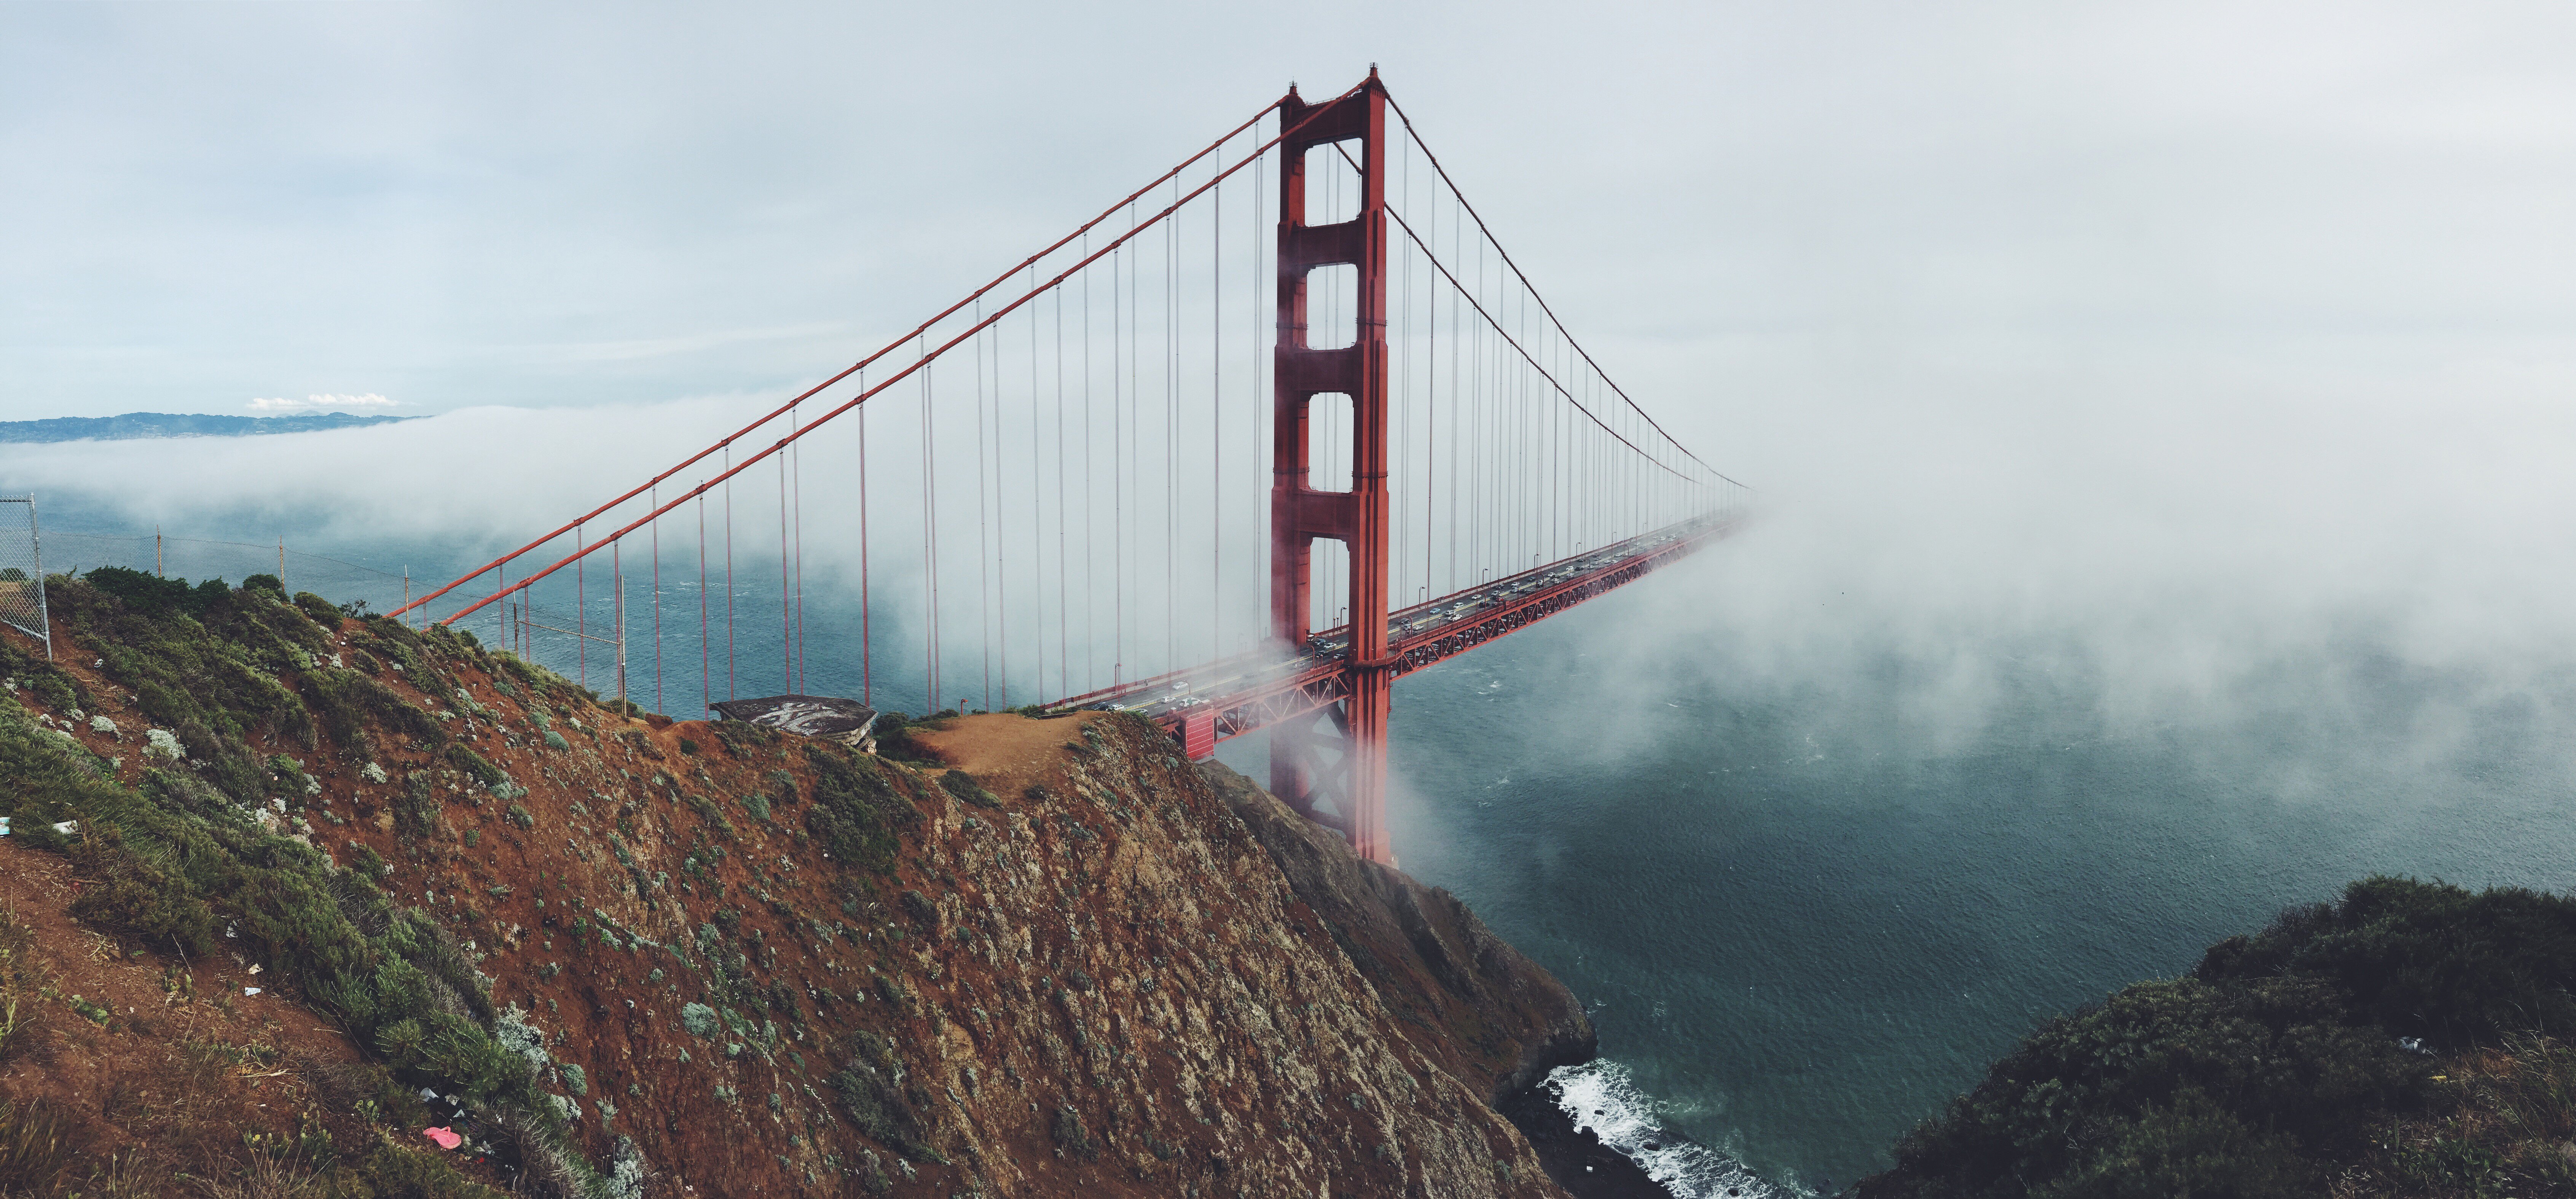 Không thể bỏ qua cầu vàng nổi tiếng này! Hãy thưởng thức hình ảnh ấn tượng của Golden Gate Bridge và cảm nhận sự vẻ đẹp ngất ngây của công trình này.